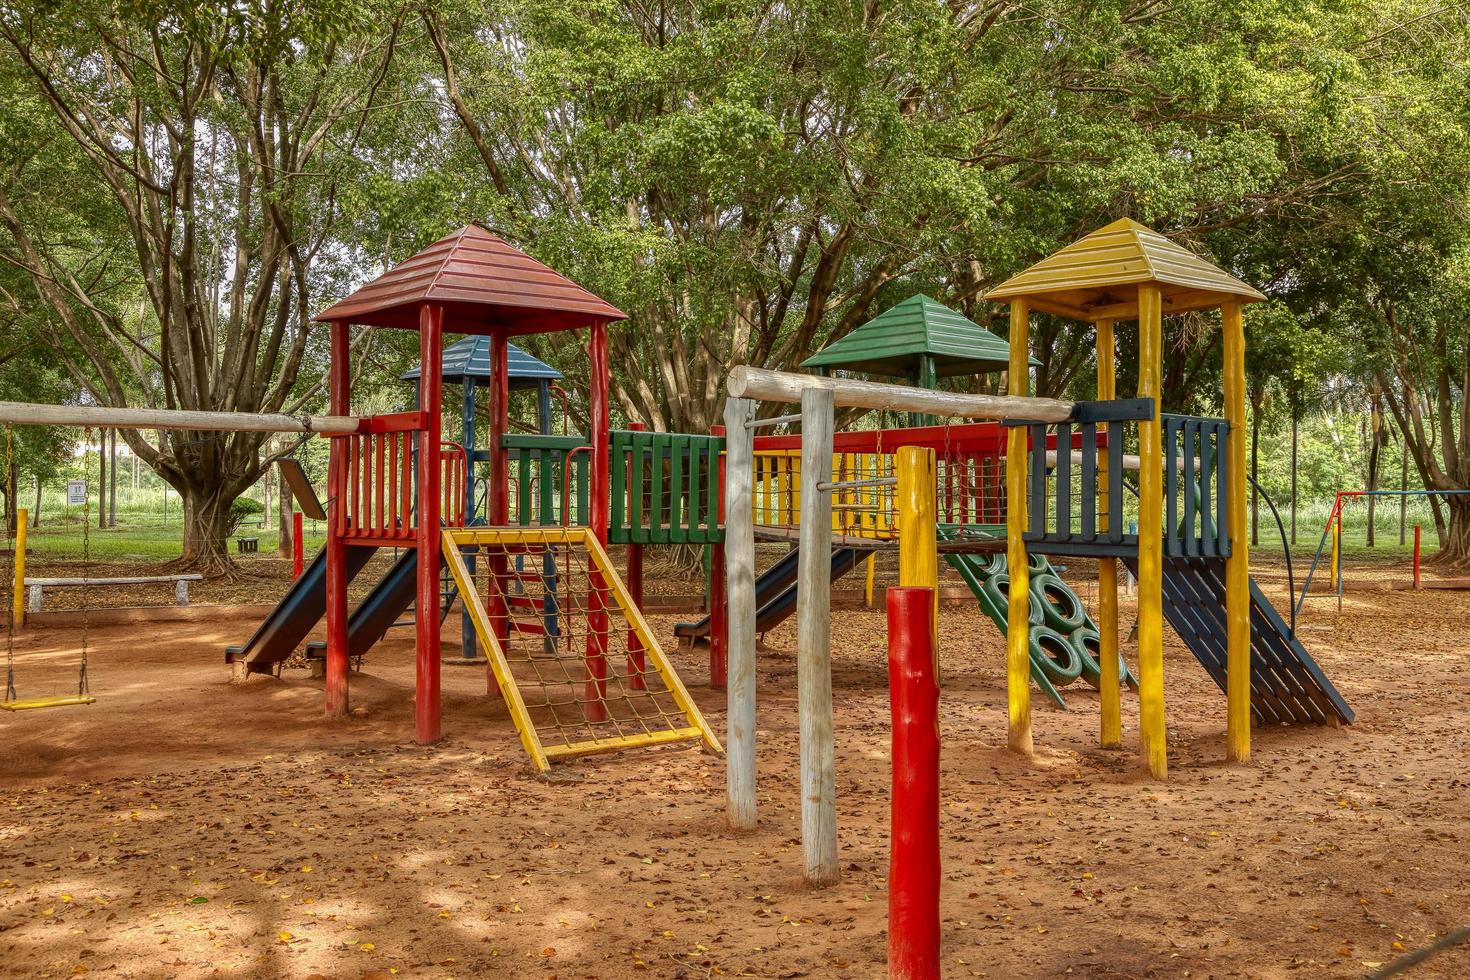 cassilândia, mato grosso do sul, brasil, 2021 - parque infantil de madeira foto